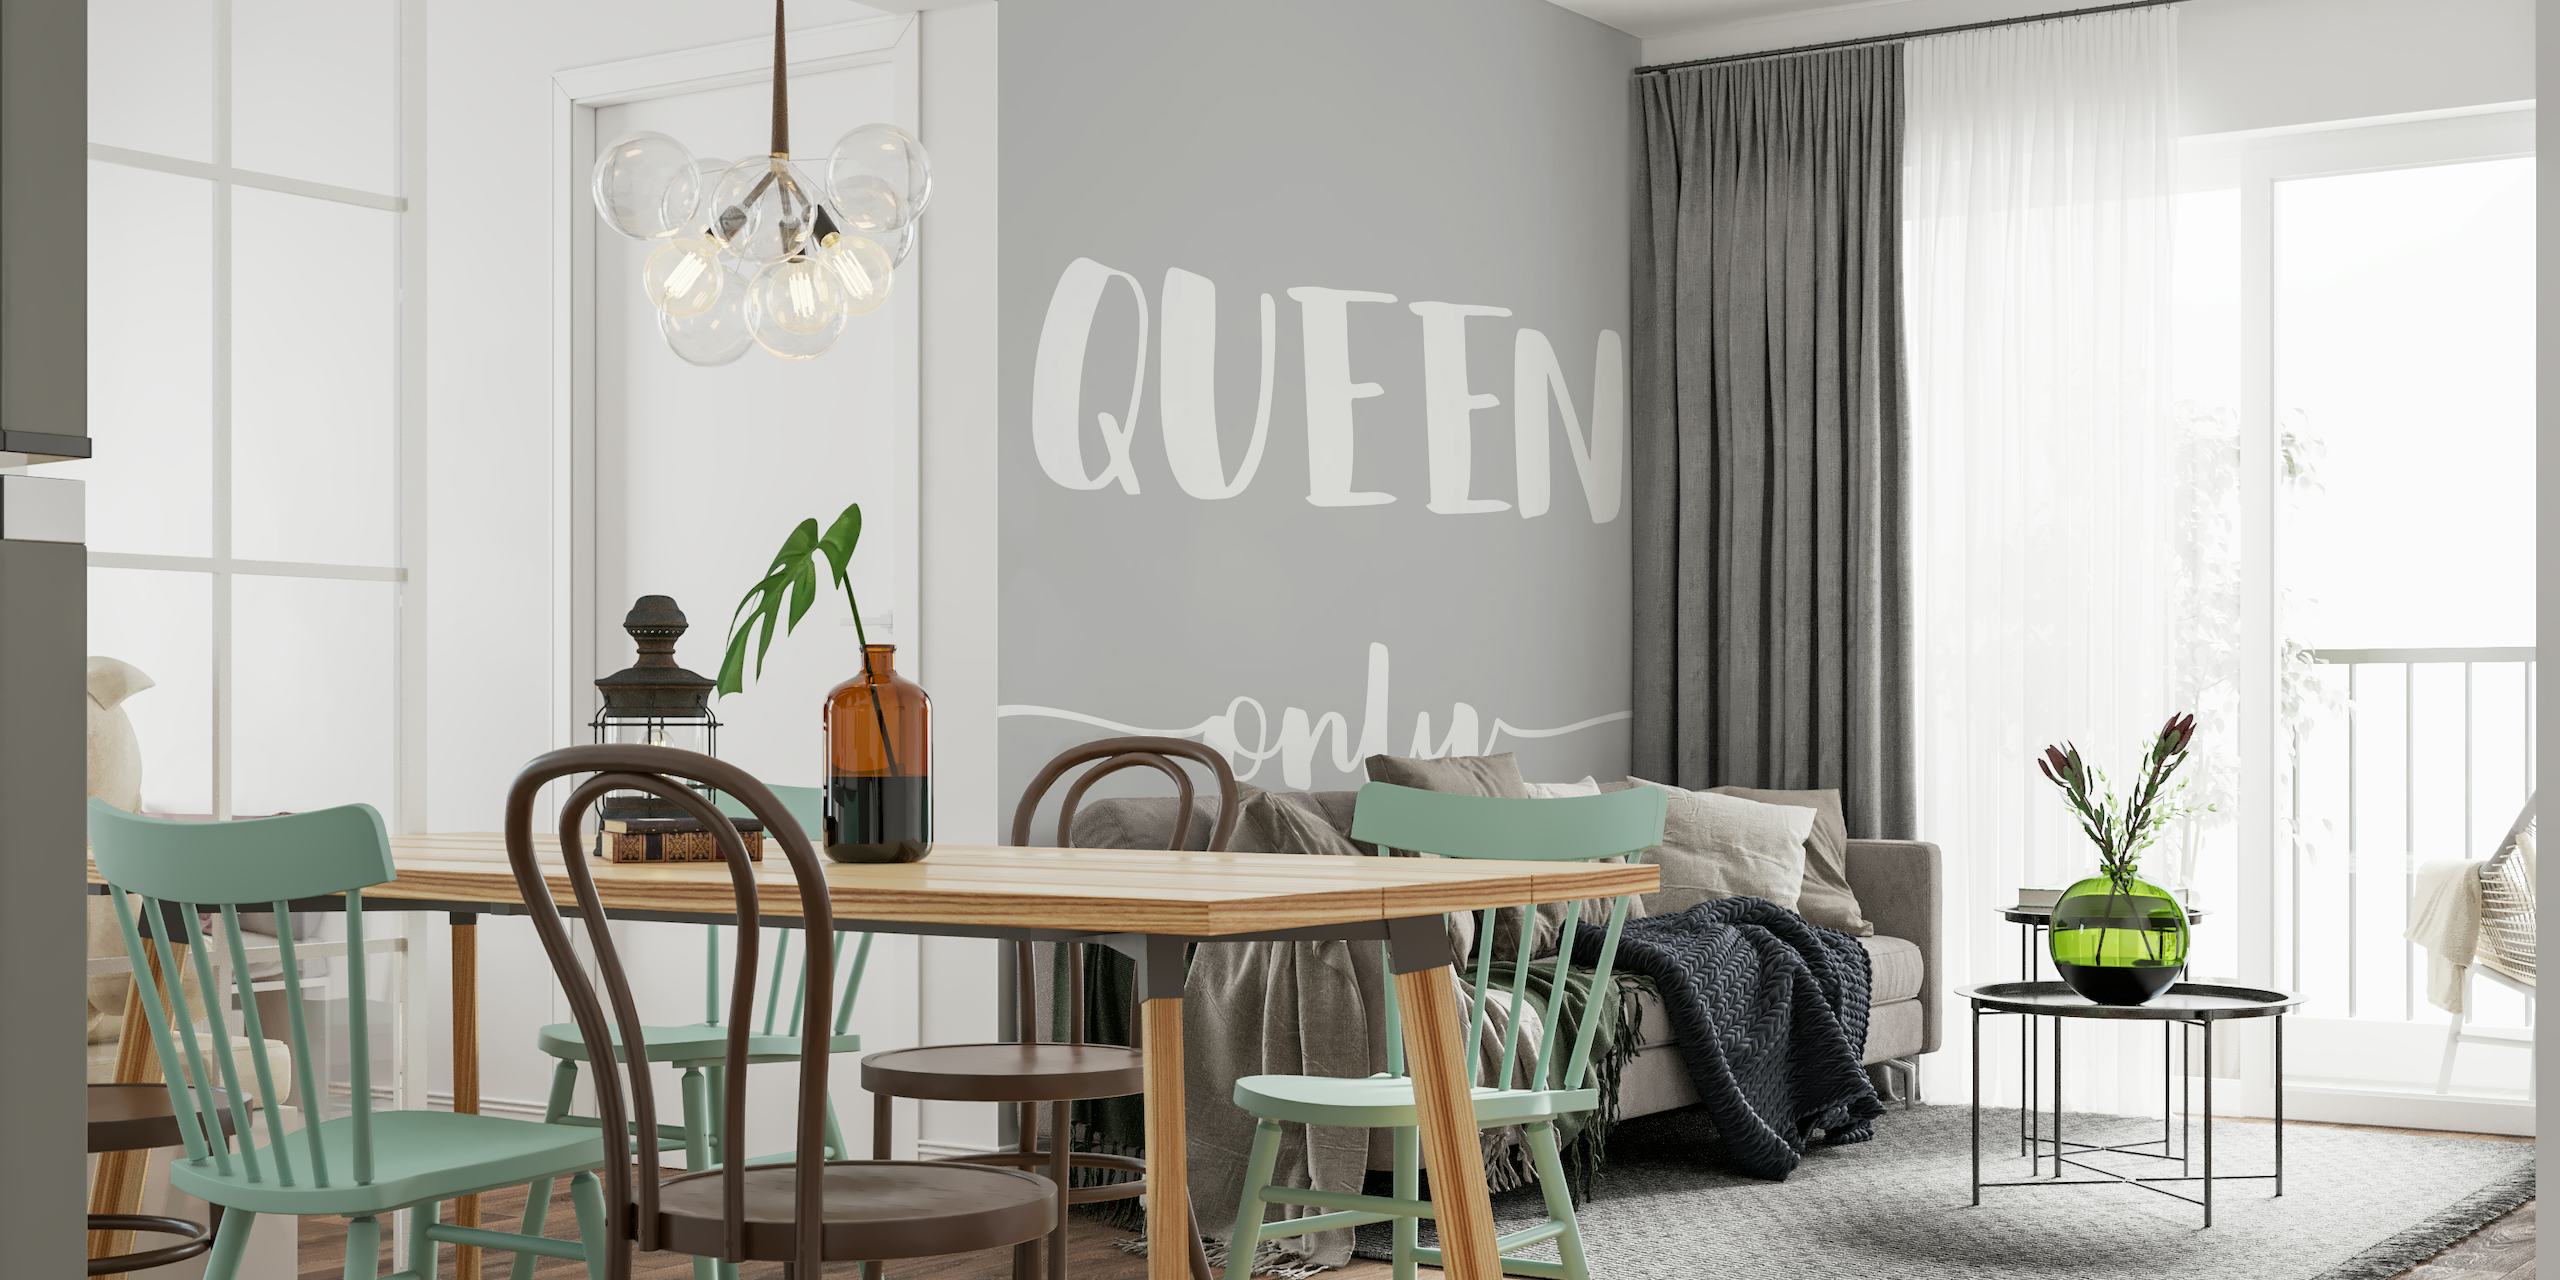 Papier peint mural minimaliste avec texte « Queen Only » en gris et blanc